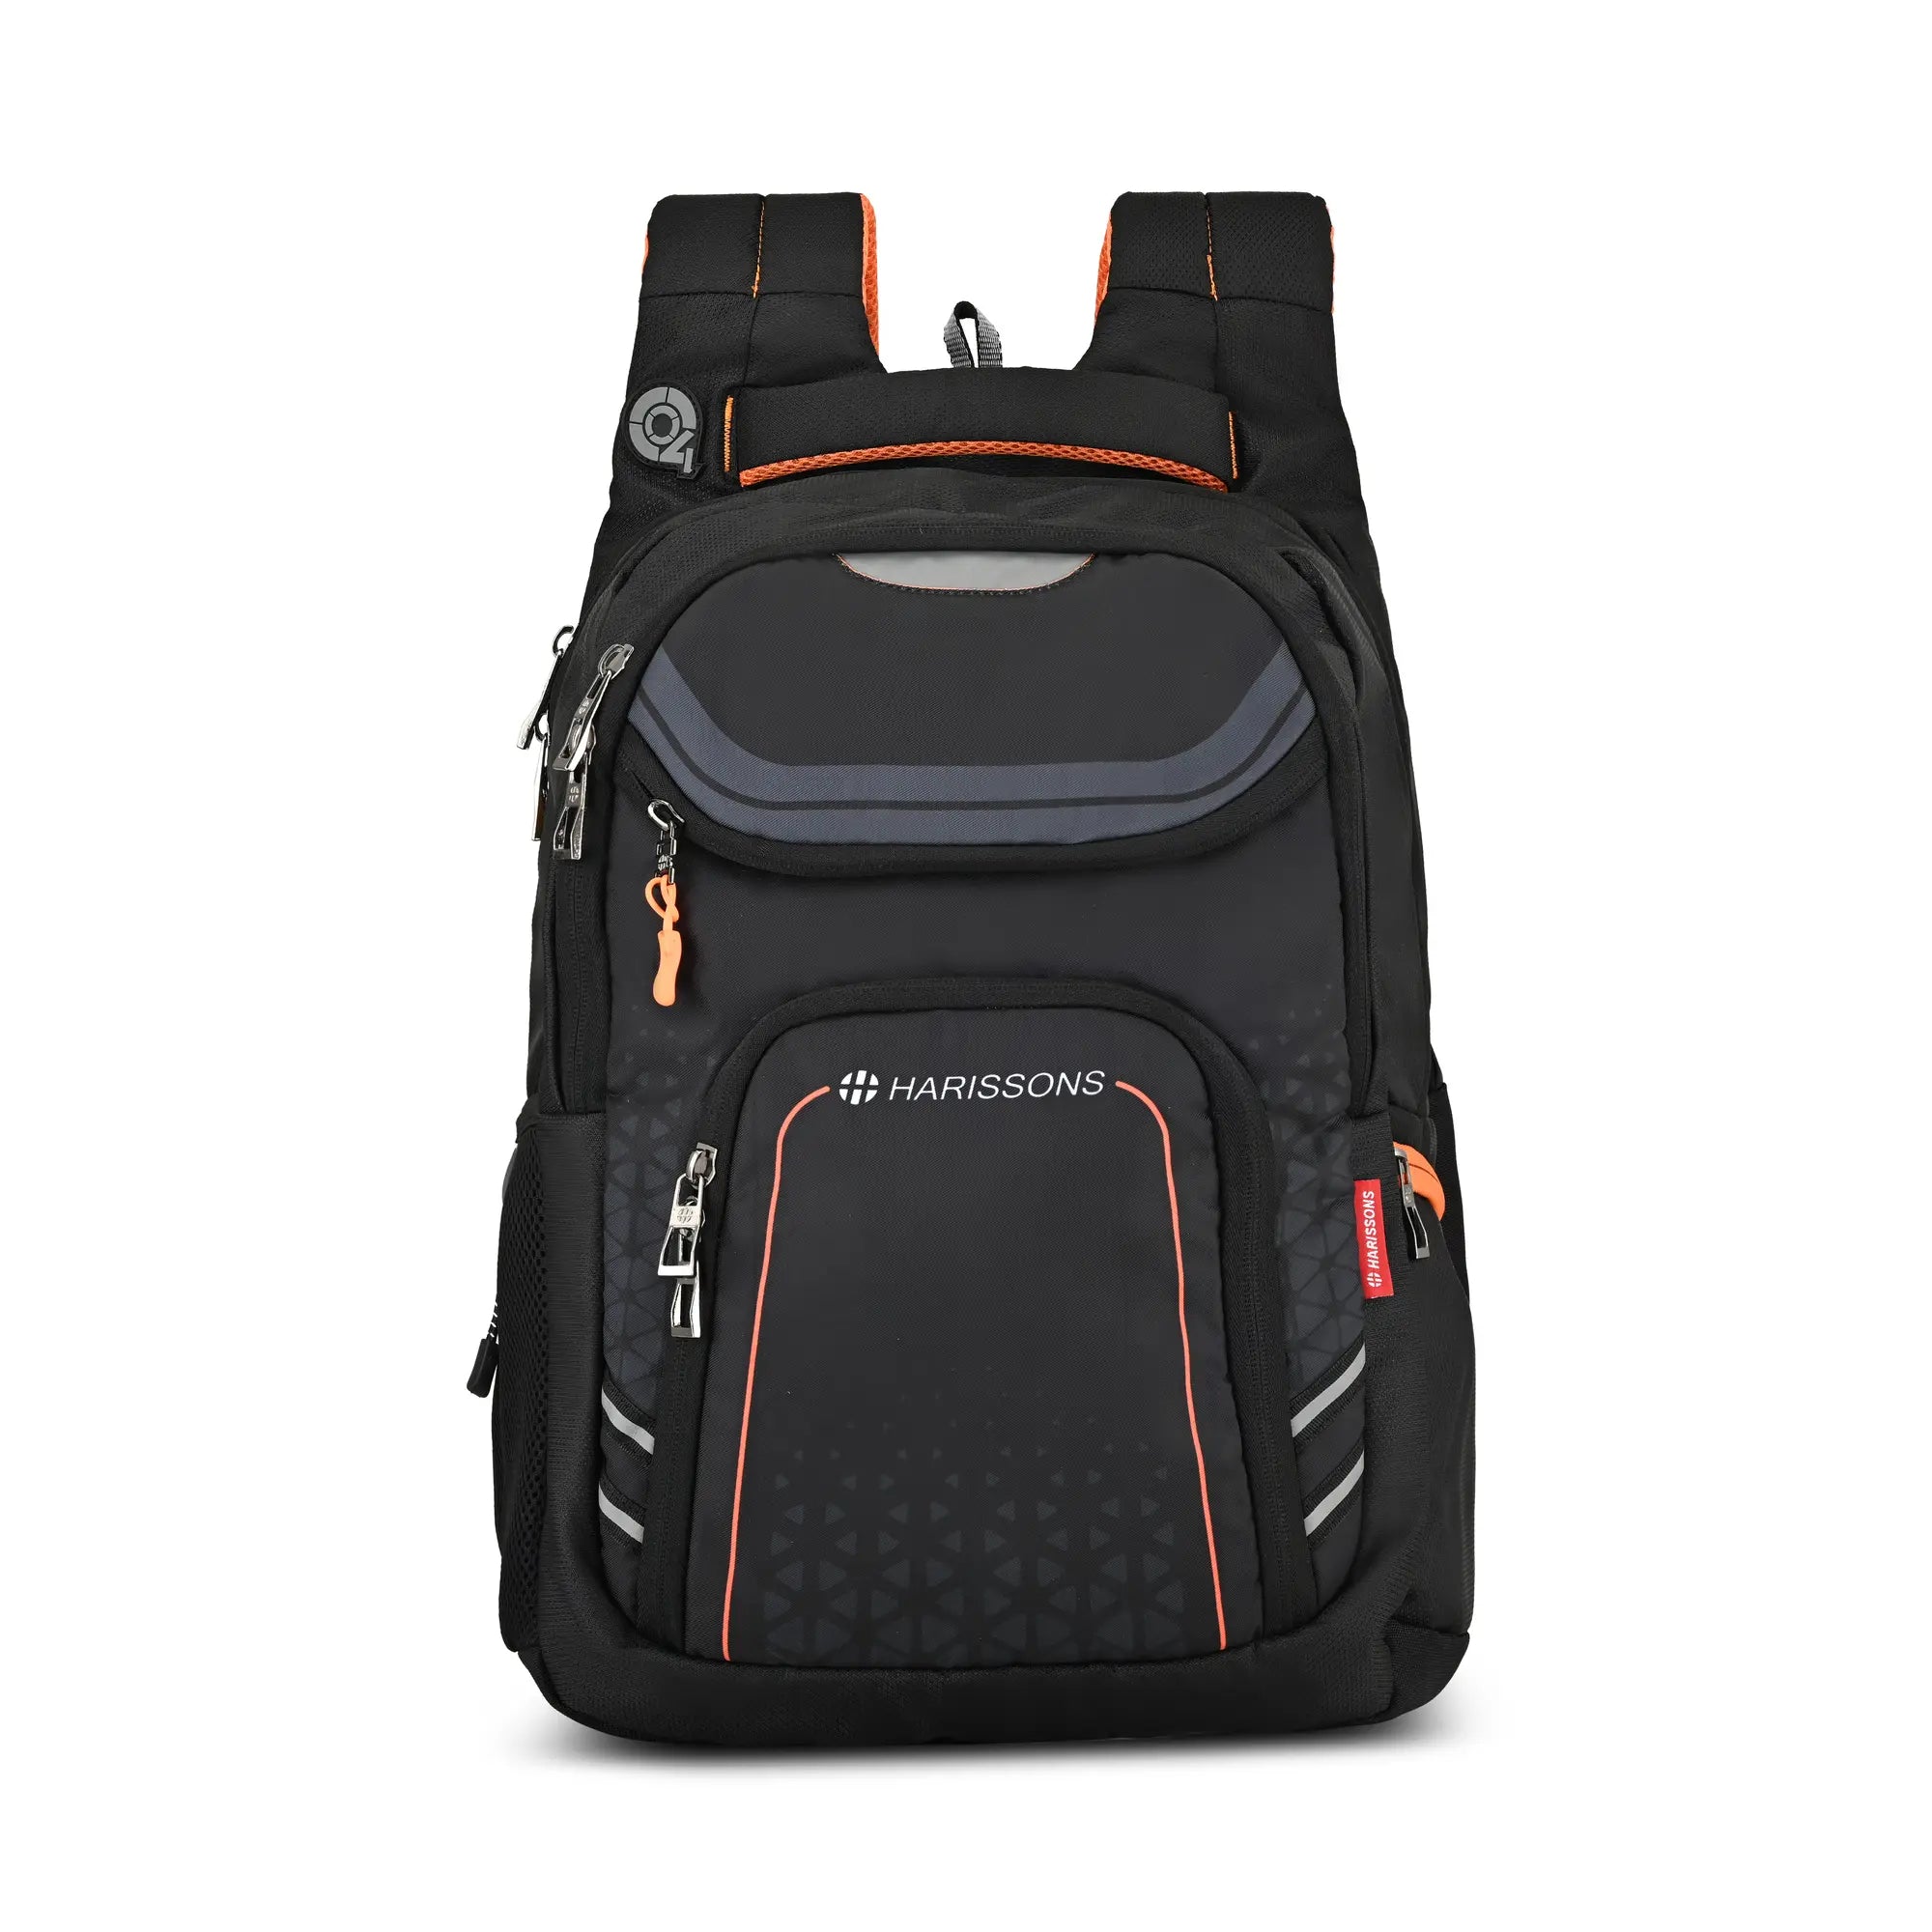 HYPNOS - 35L Quadraquip Laptop Backpack (15.6”)